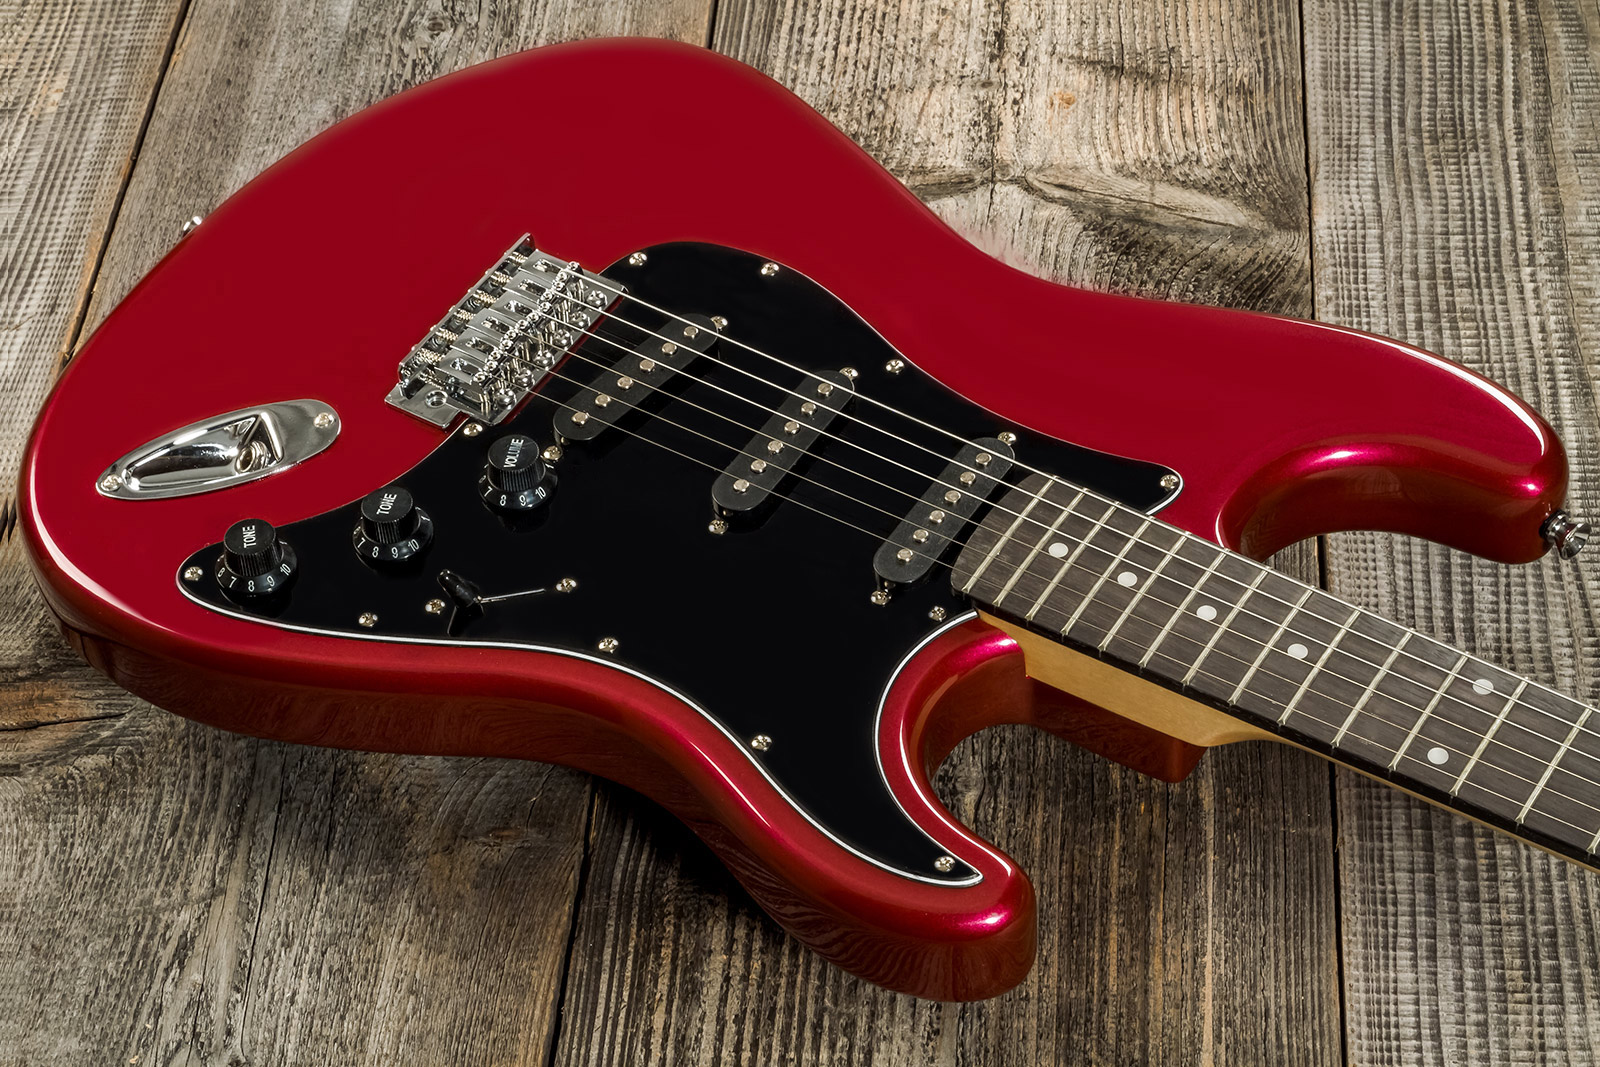 Eastone Str70t 3s Trem Pur - Dark Red - Str shape electric guitar - Variation 7